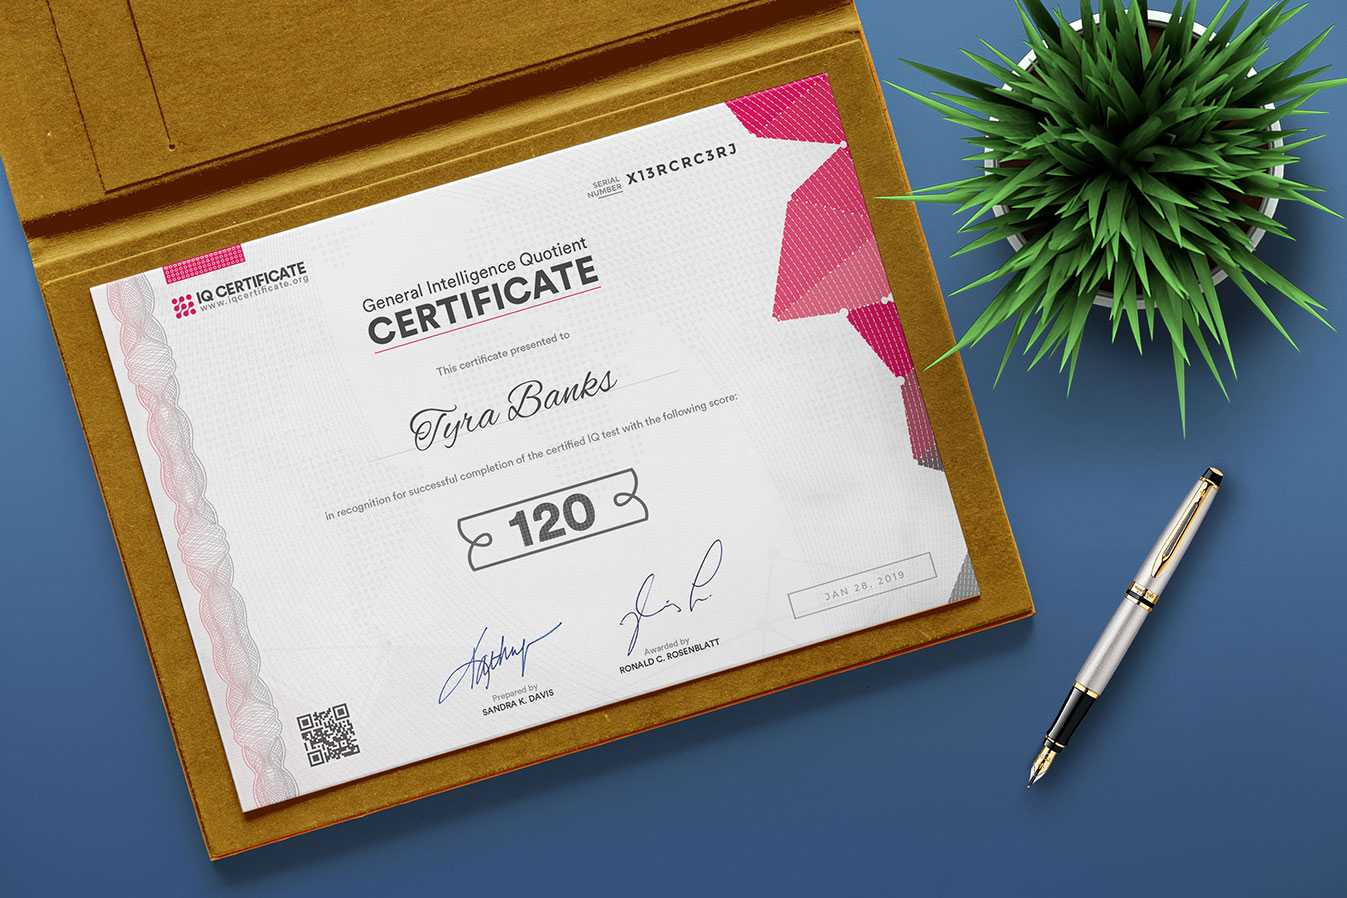 Sample Iq Certificate - Get Your Iq Certificate! For Iq Certificate Template